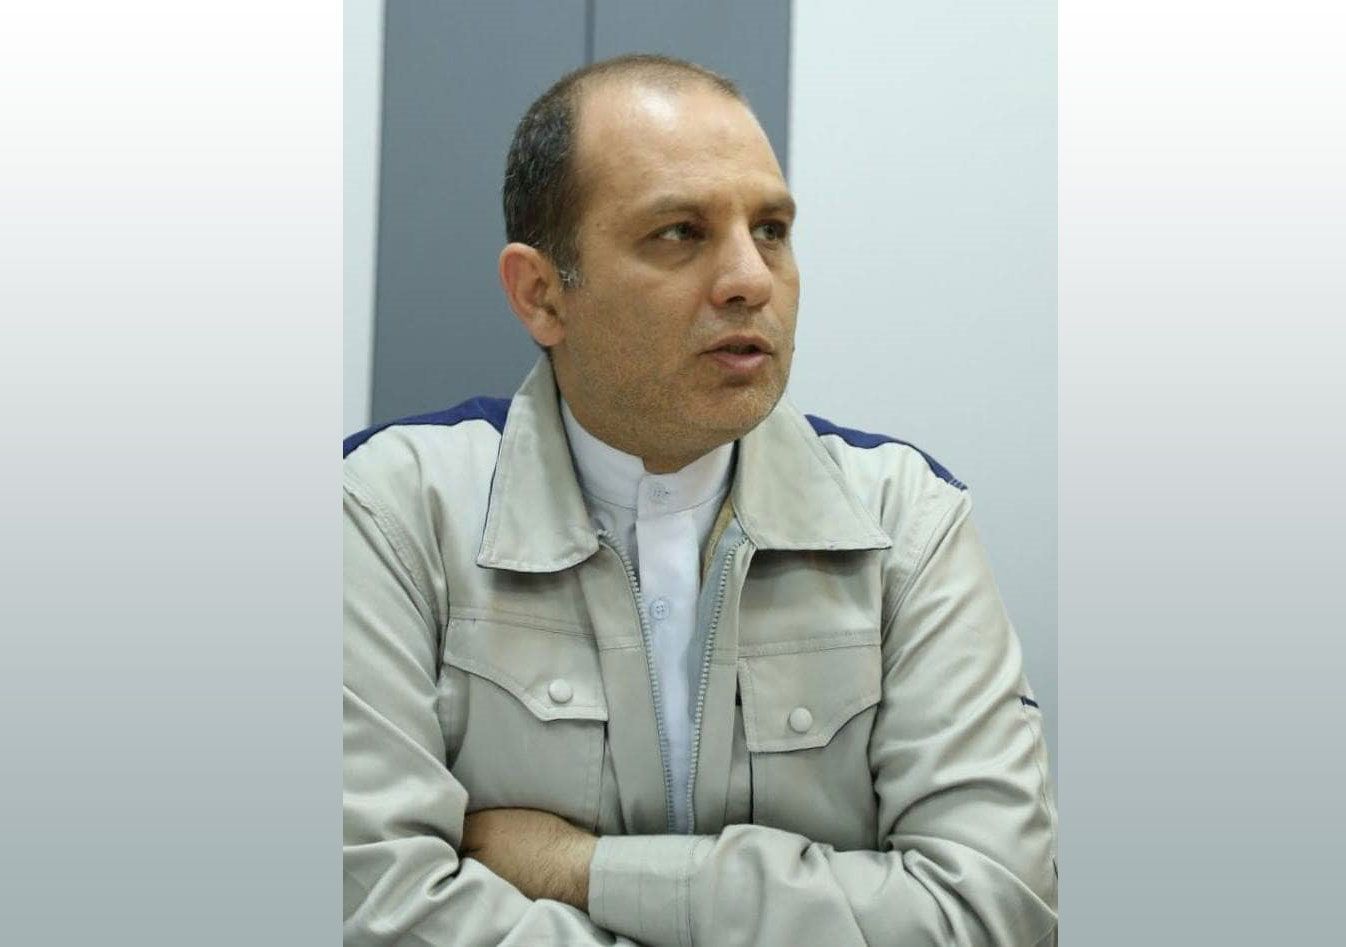 دکتر امیر رحیمی قاضی کلایه مدیر عامل گروه سرمایه گذاری صدرآرین شد.